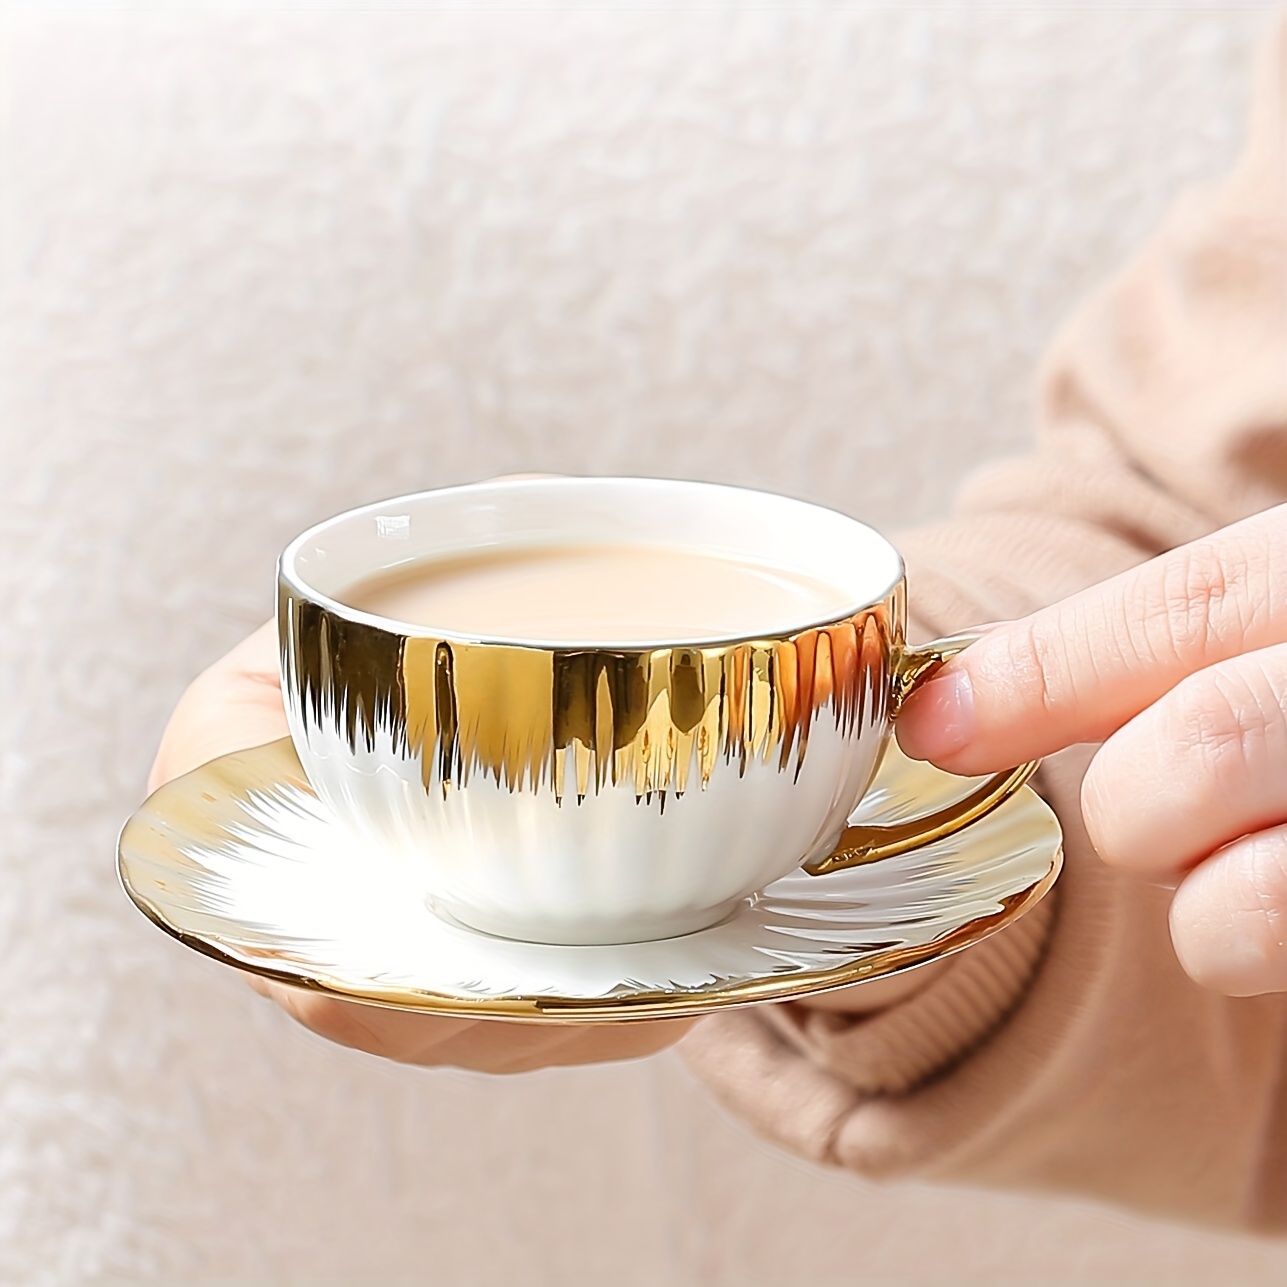 Elegante juego de cafe taza y plato en relieve y reflejos dorados